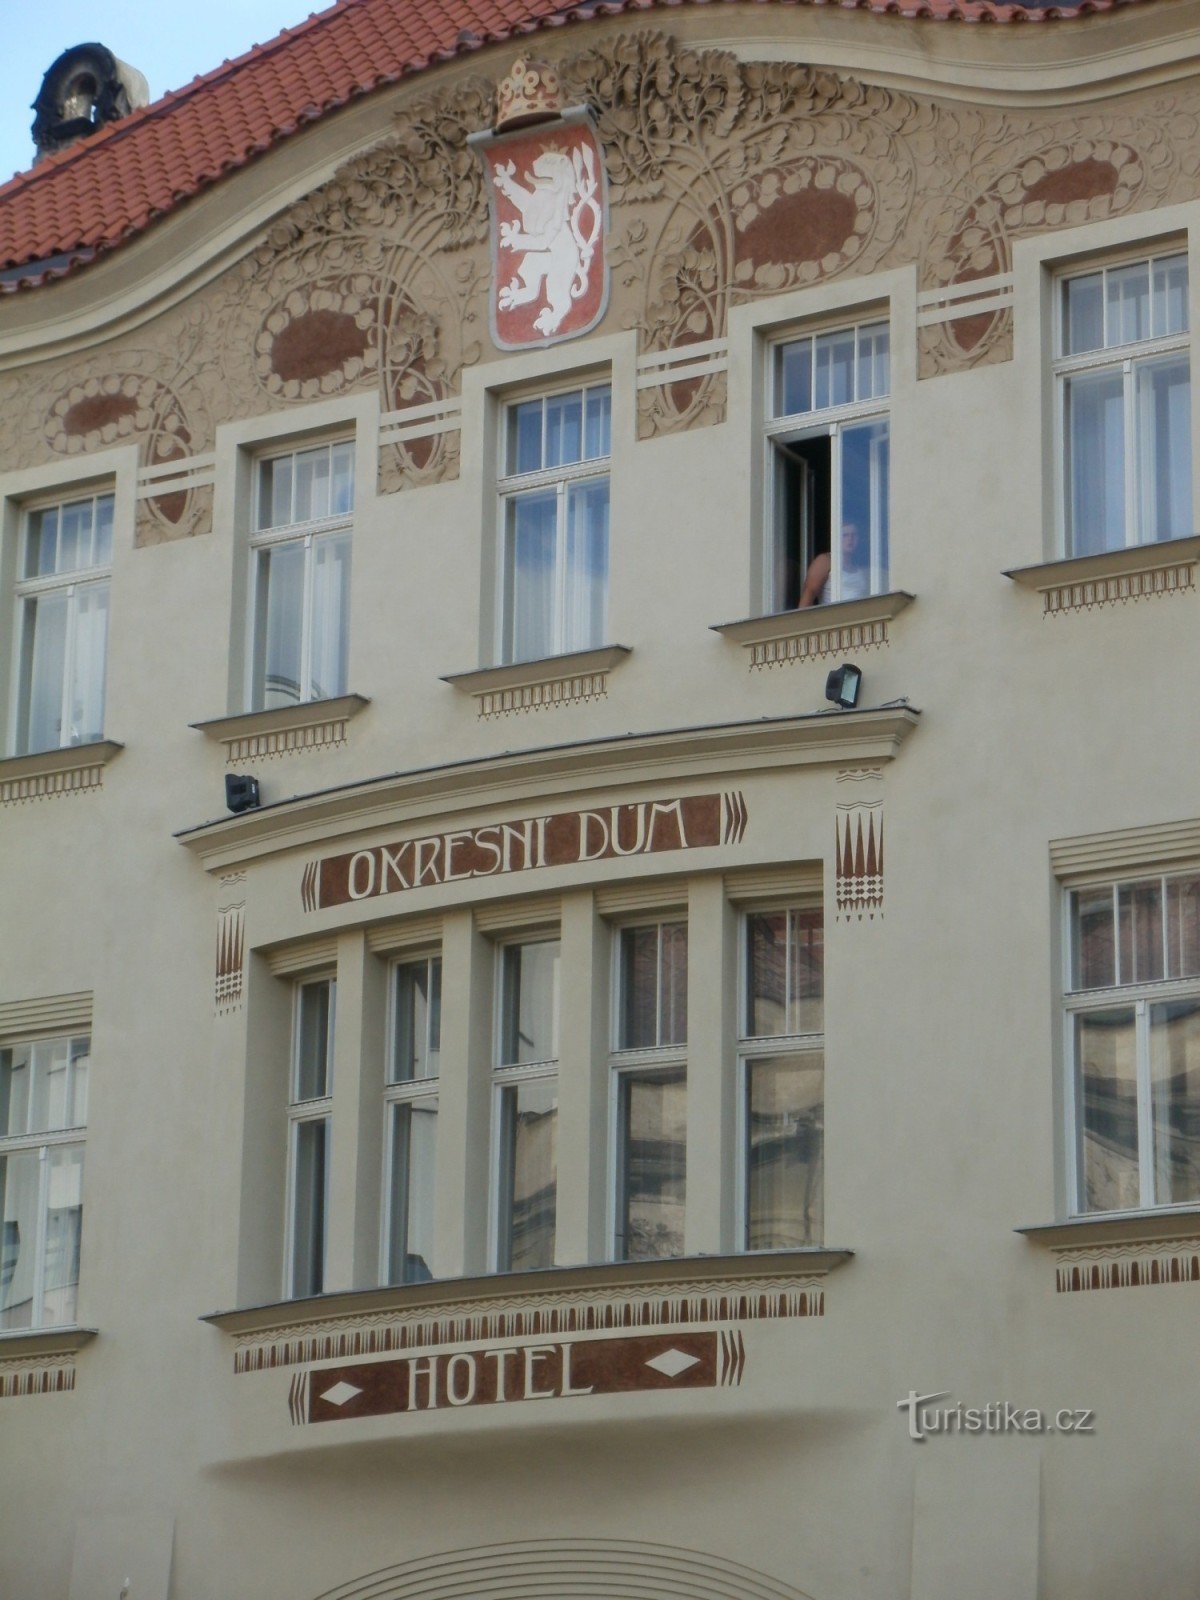 Hradec Králové - Casa del distrito